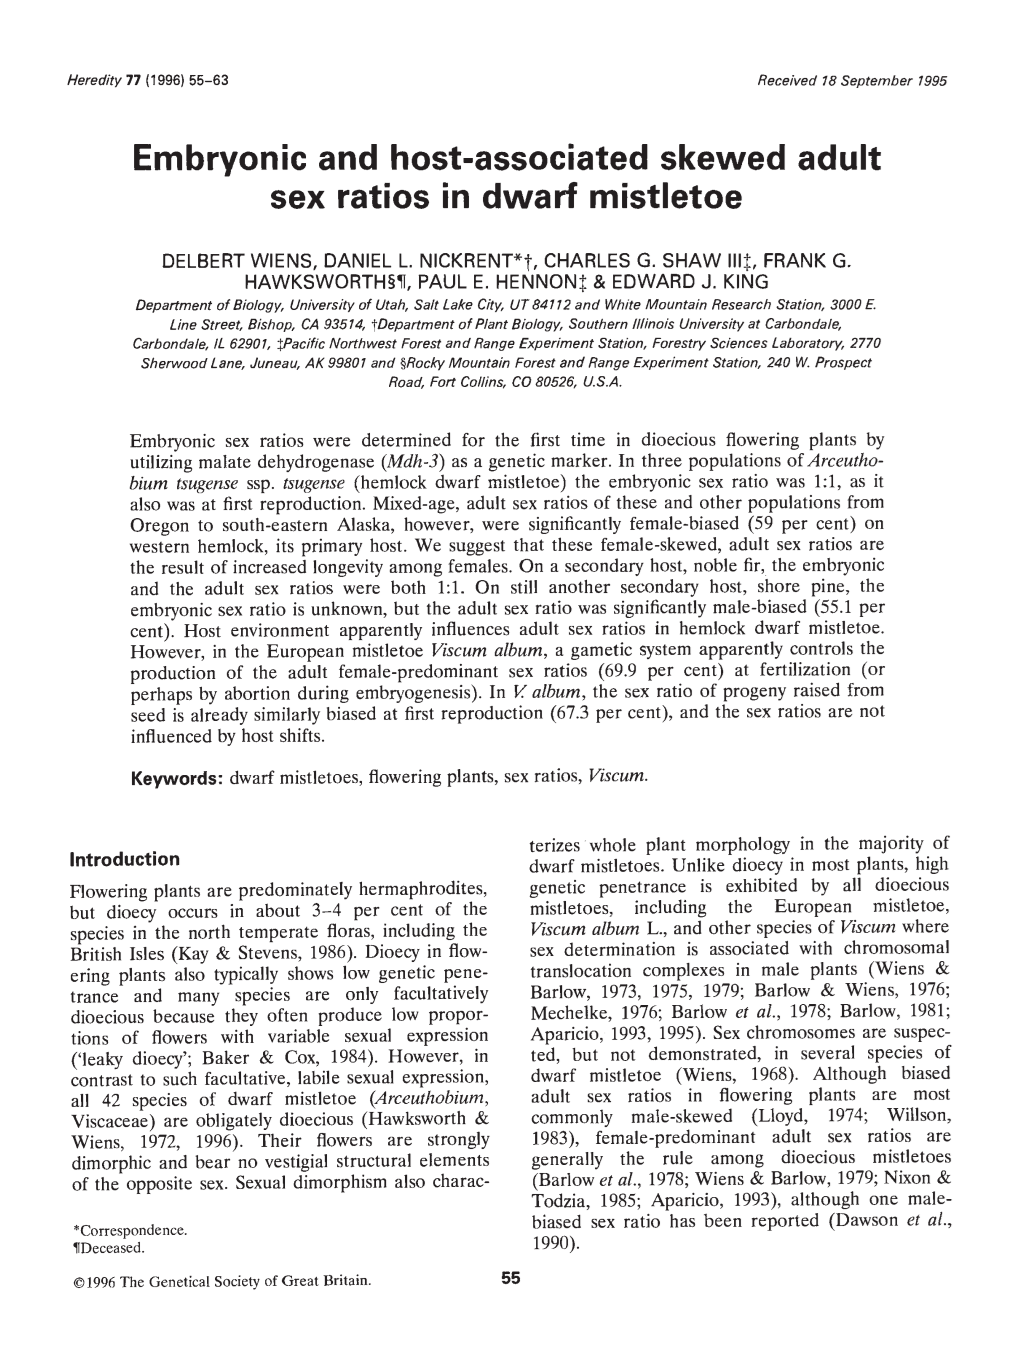 Sex Ratios in Dwarf Mistletoe